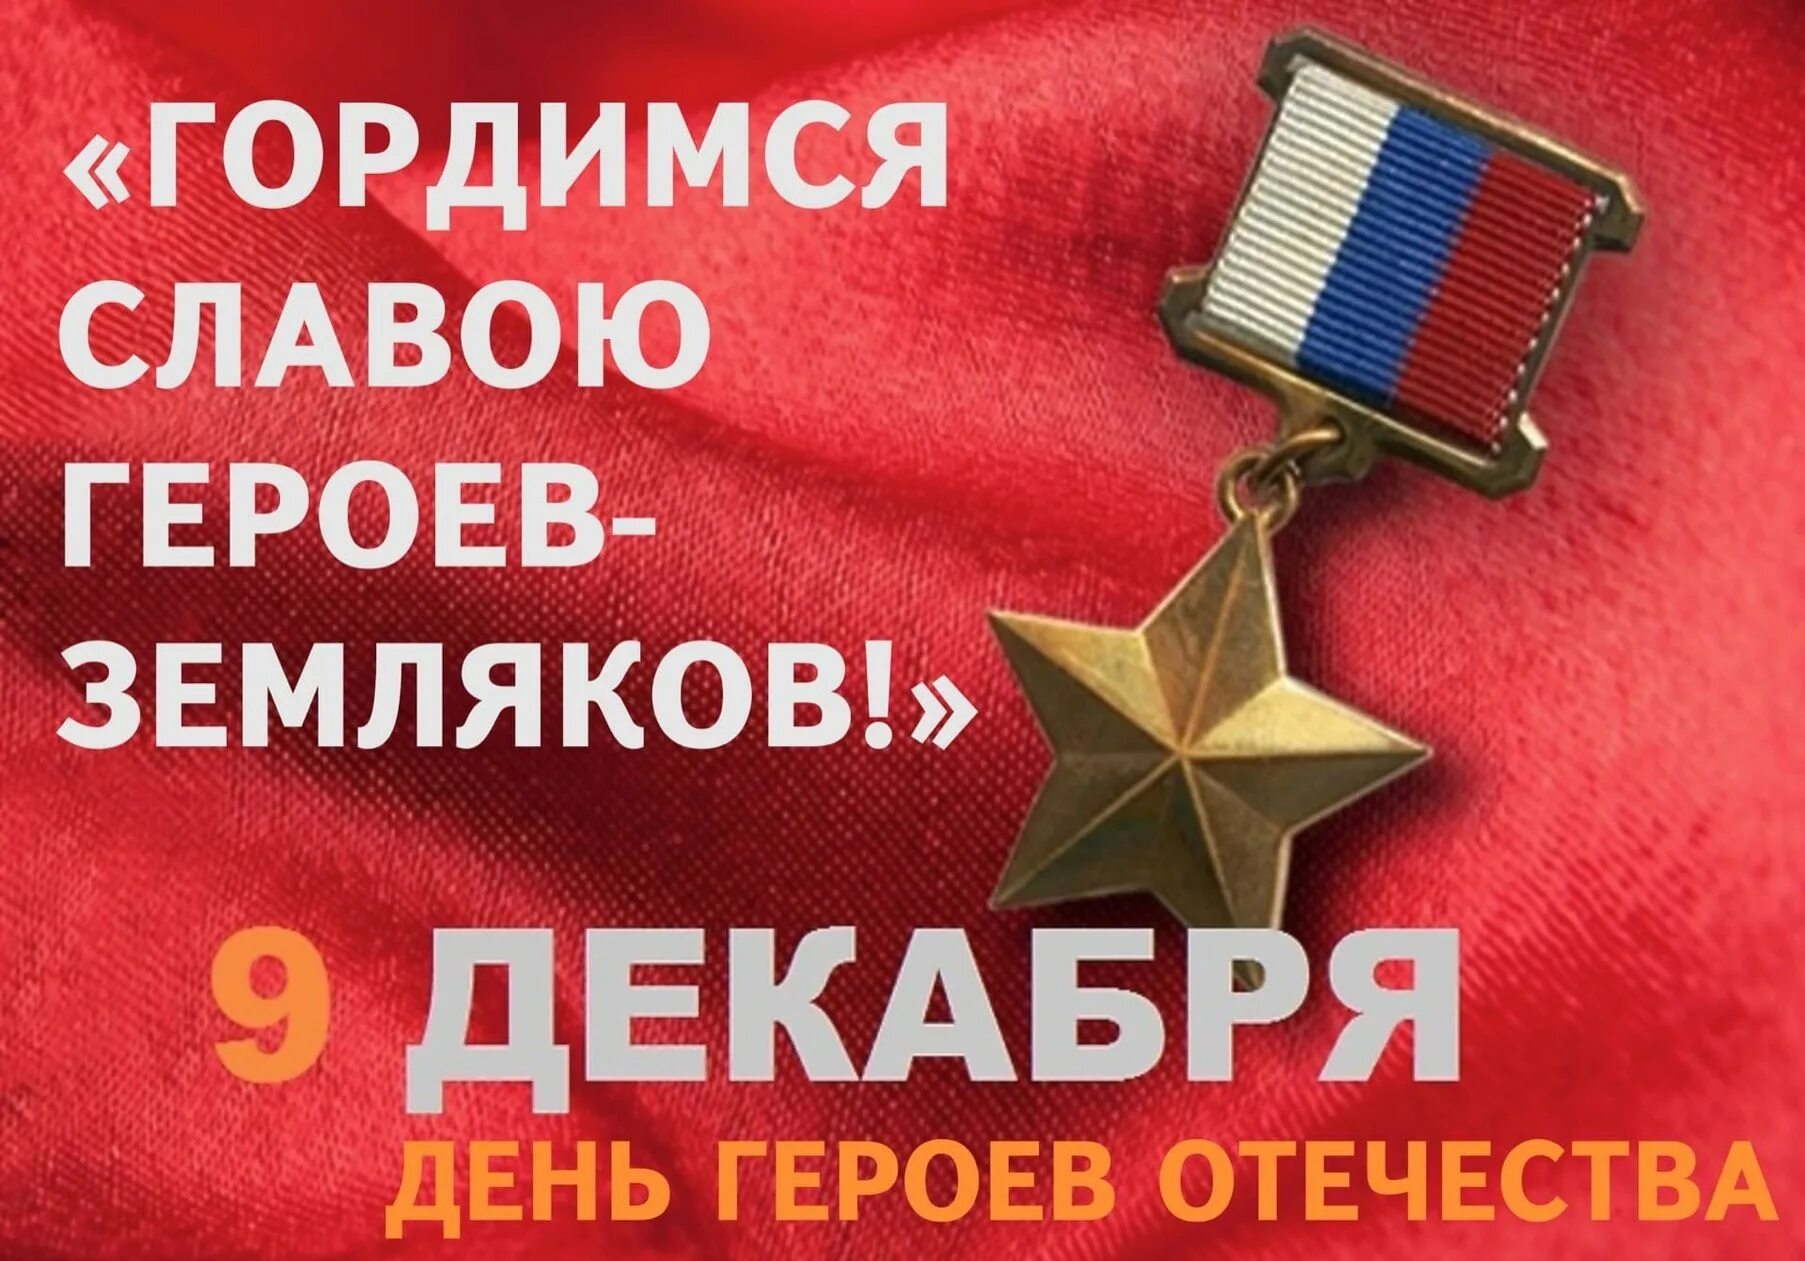 Поздравили с днем героев. День героев Отечества. День героев Отечества 9 декабря. День героев России. День героев России 9 декабря.